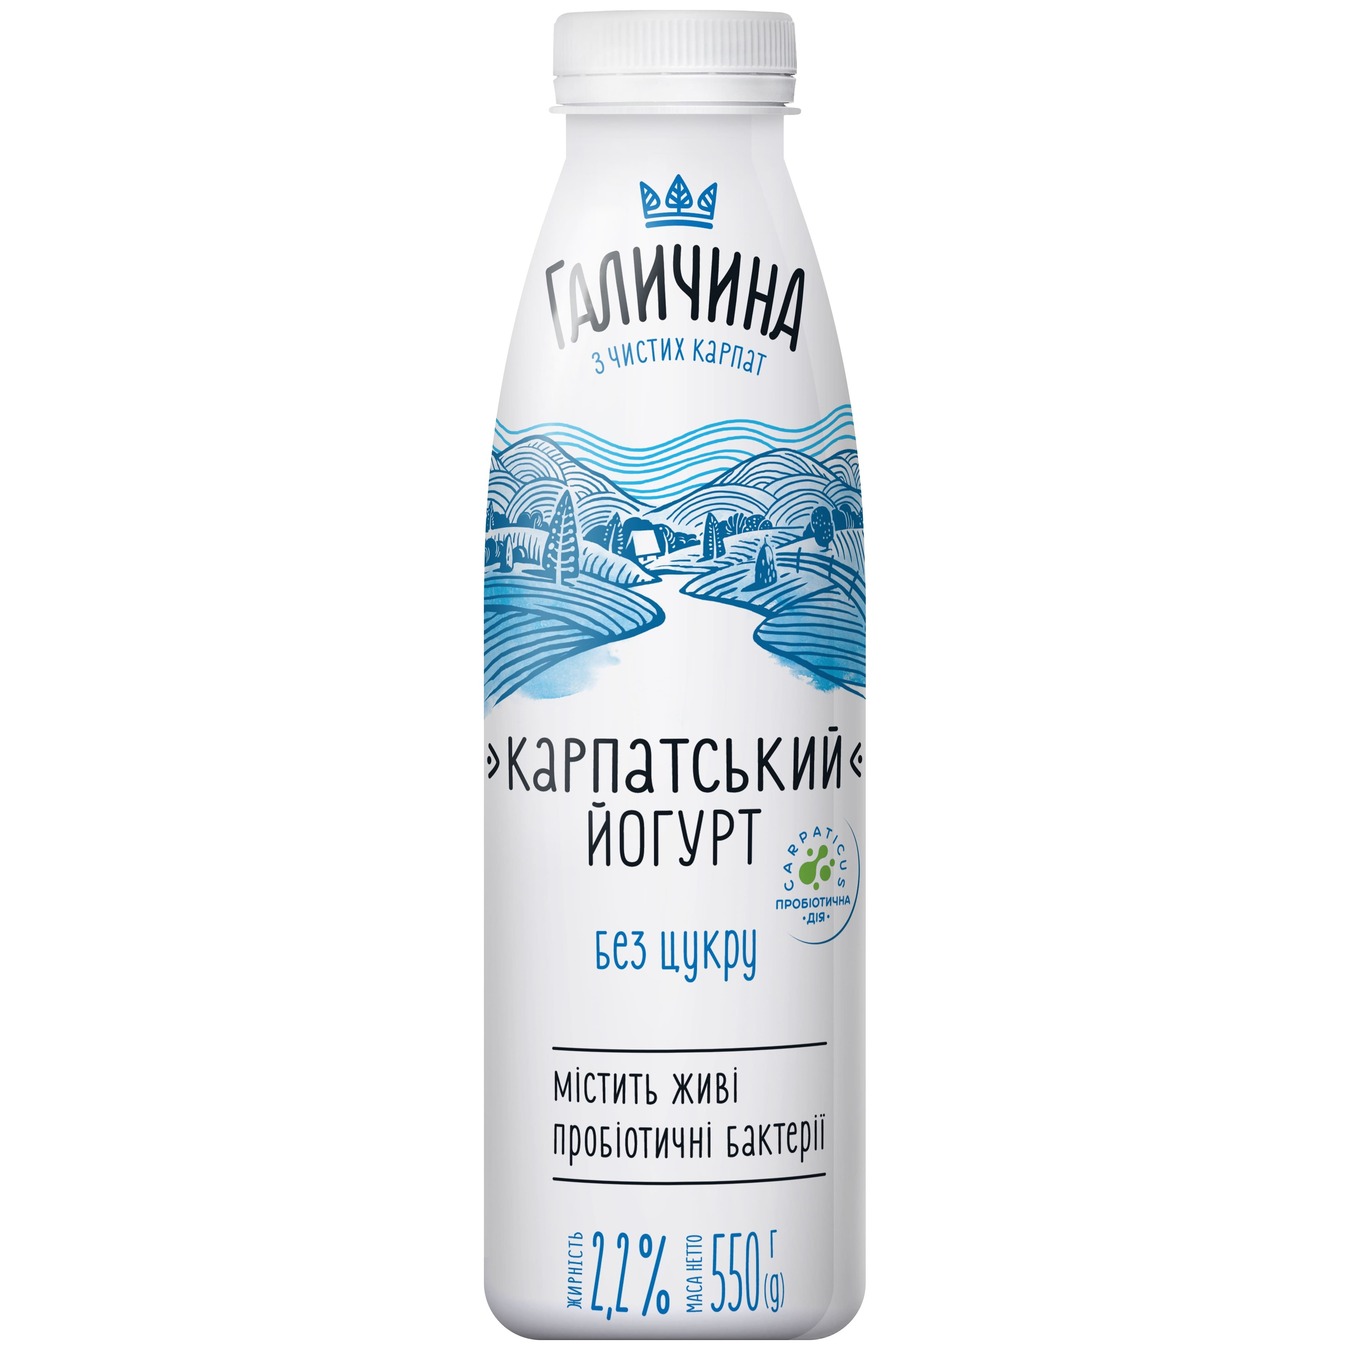 Galychyna Carpathian Sugar-Free Yogurt 0,022 550g